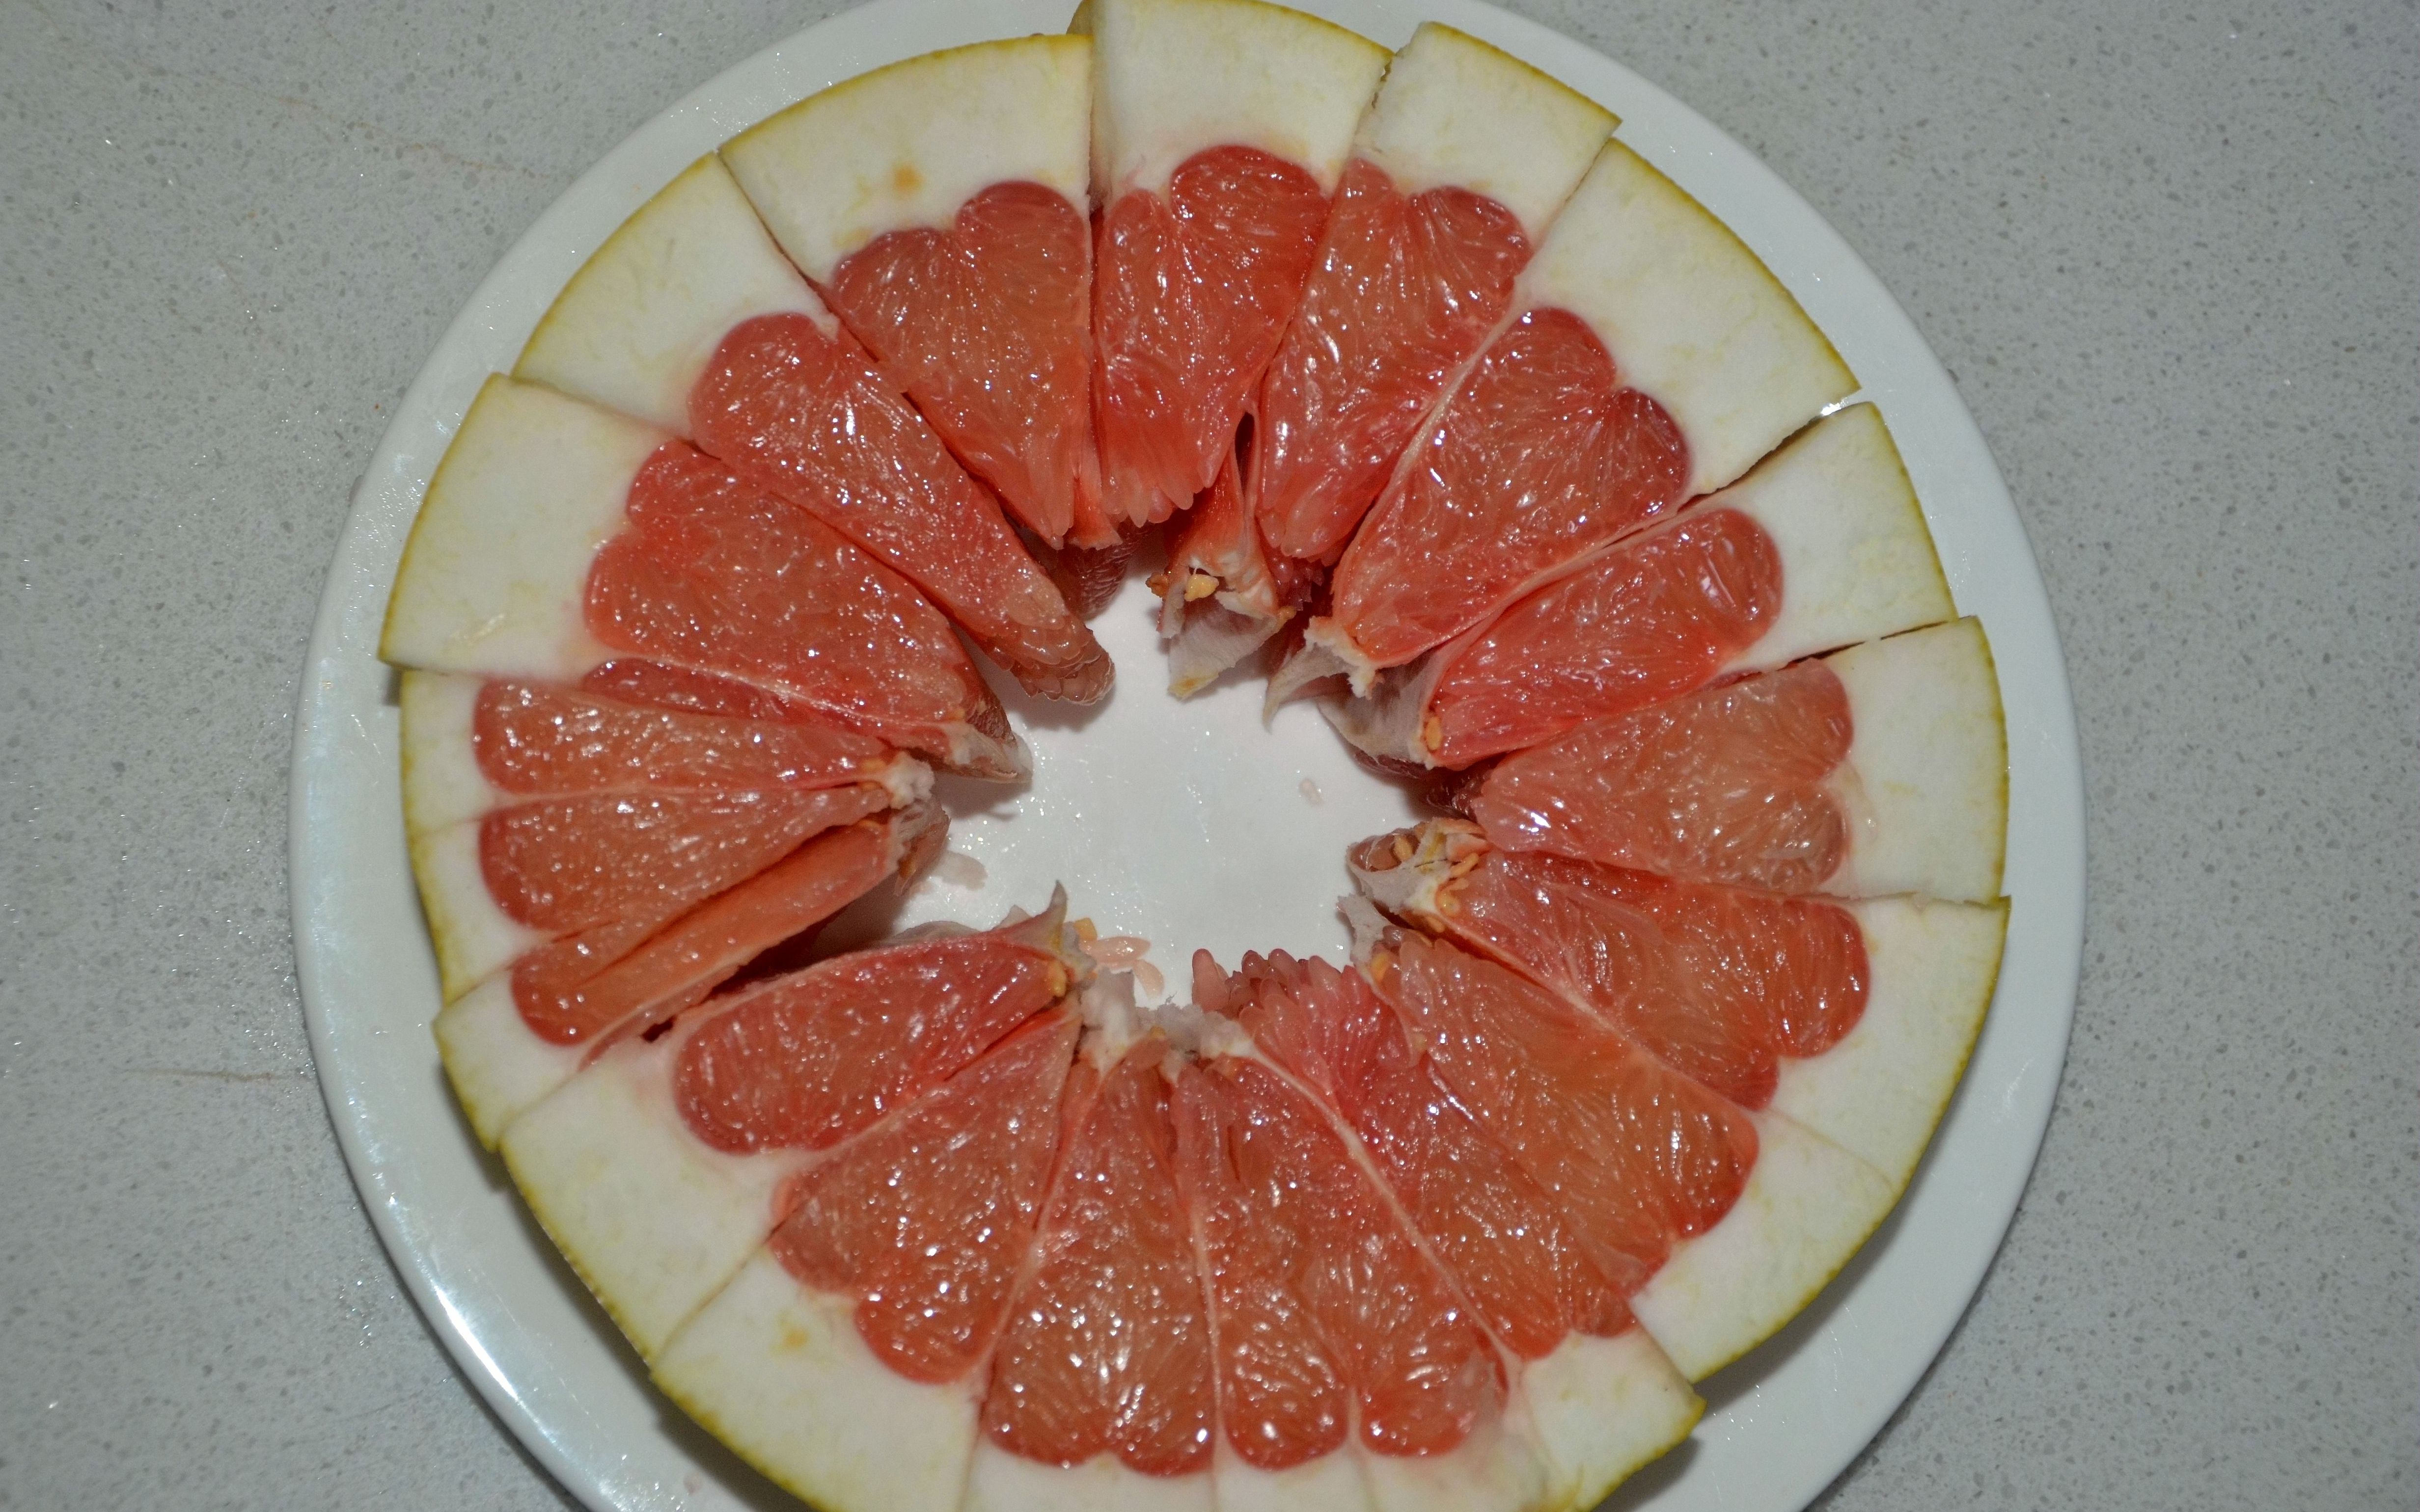 1分鐘快速切柚子法 輕鬆搞定難剝的柚子皮 | 秋天吃柚子 | 怎麼切柚子 | 剝柚子皮 | 大紀元